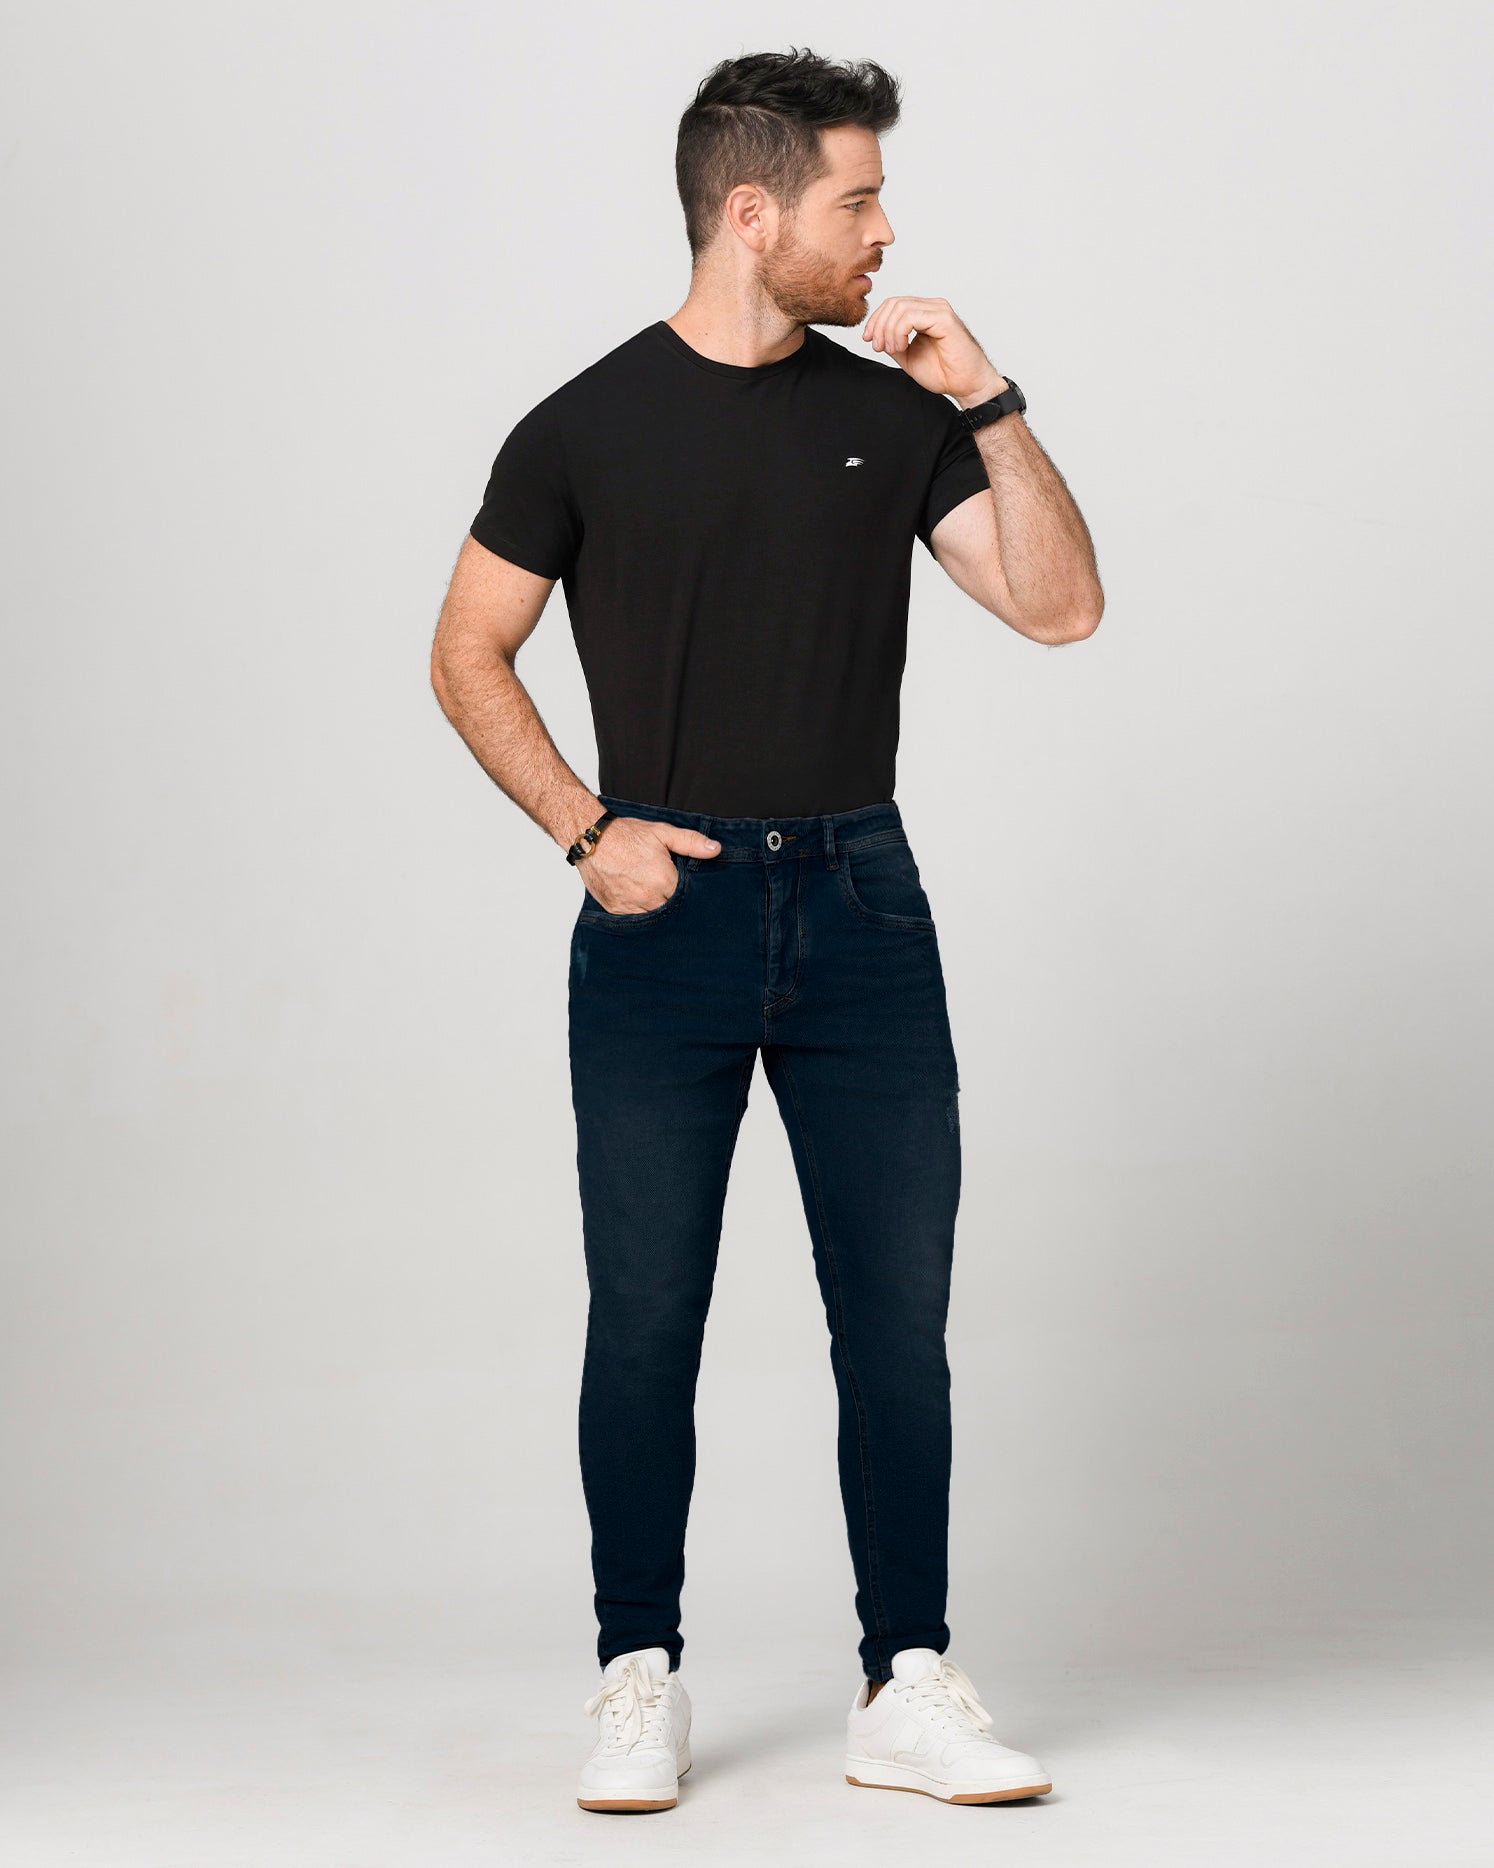 Jean skinny azul oscuro. Confeccionado en Algodón y Elastano, bolsillos laterales y posteriores funcionales. jean clásico.